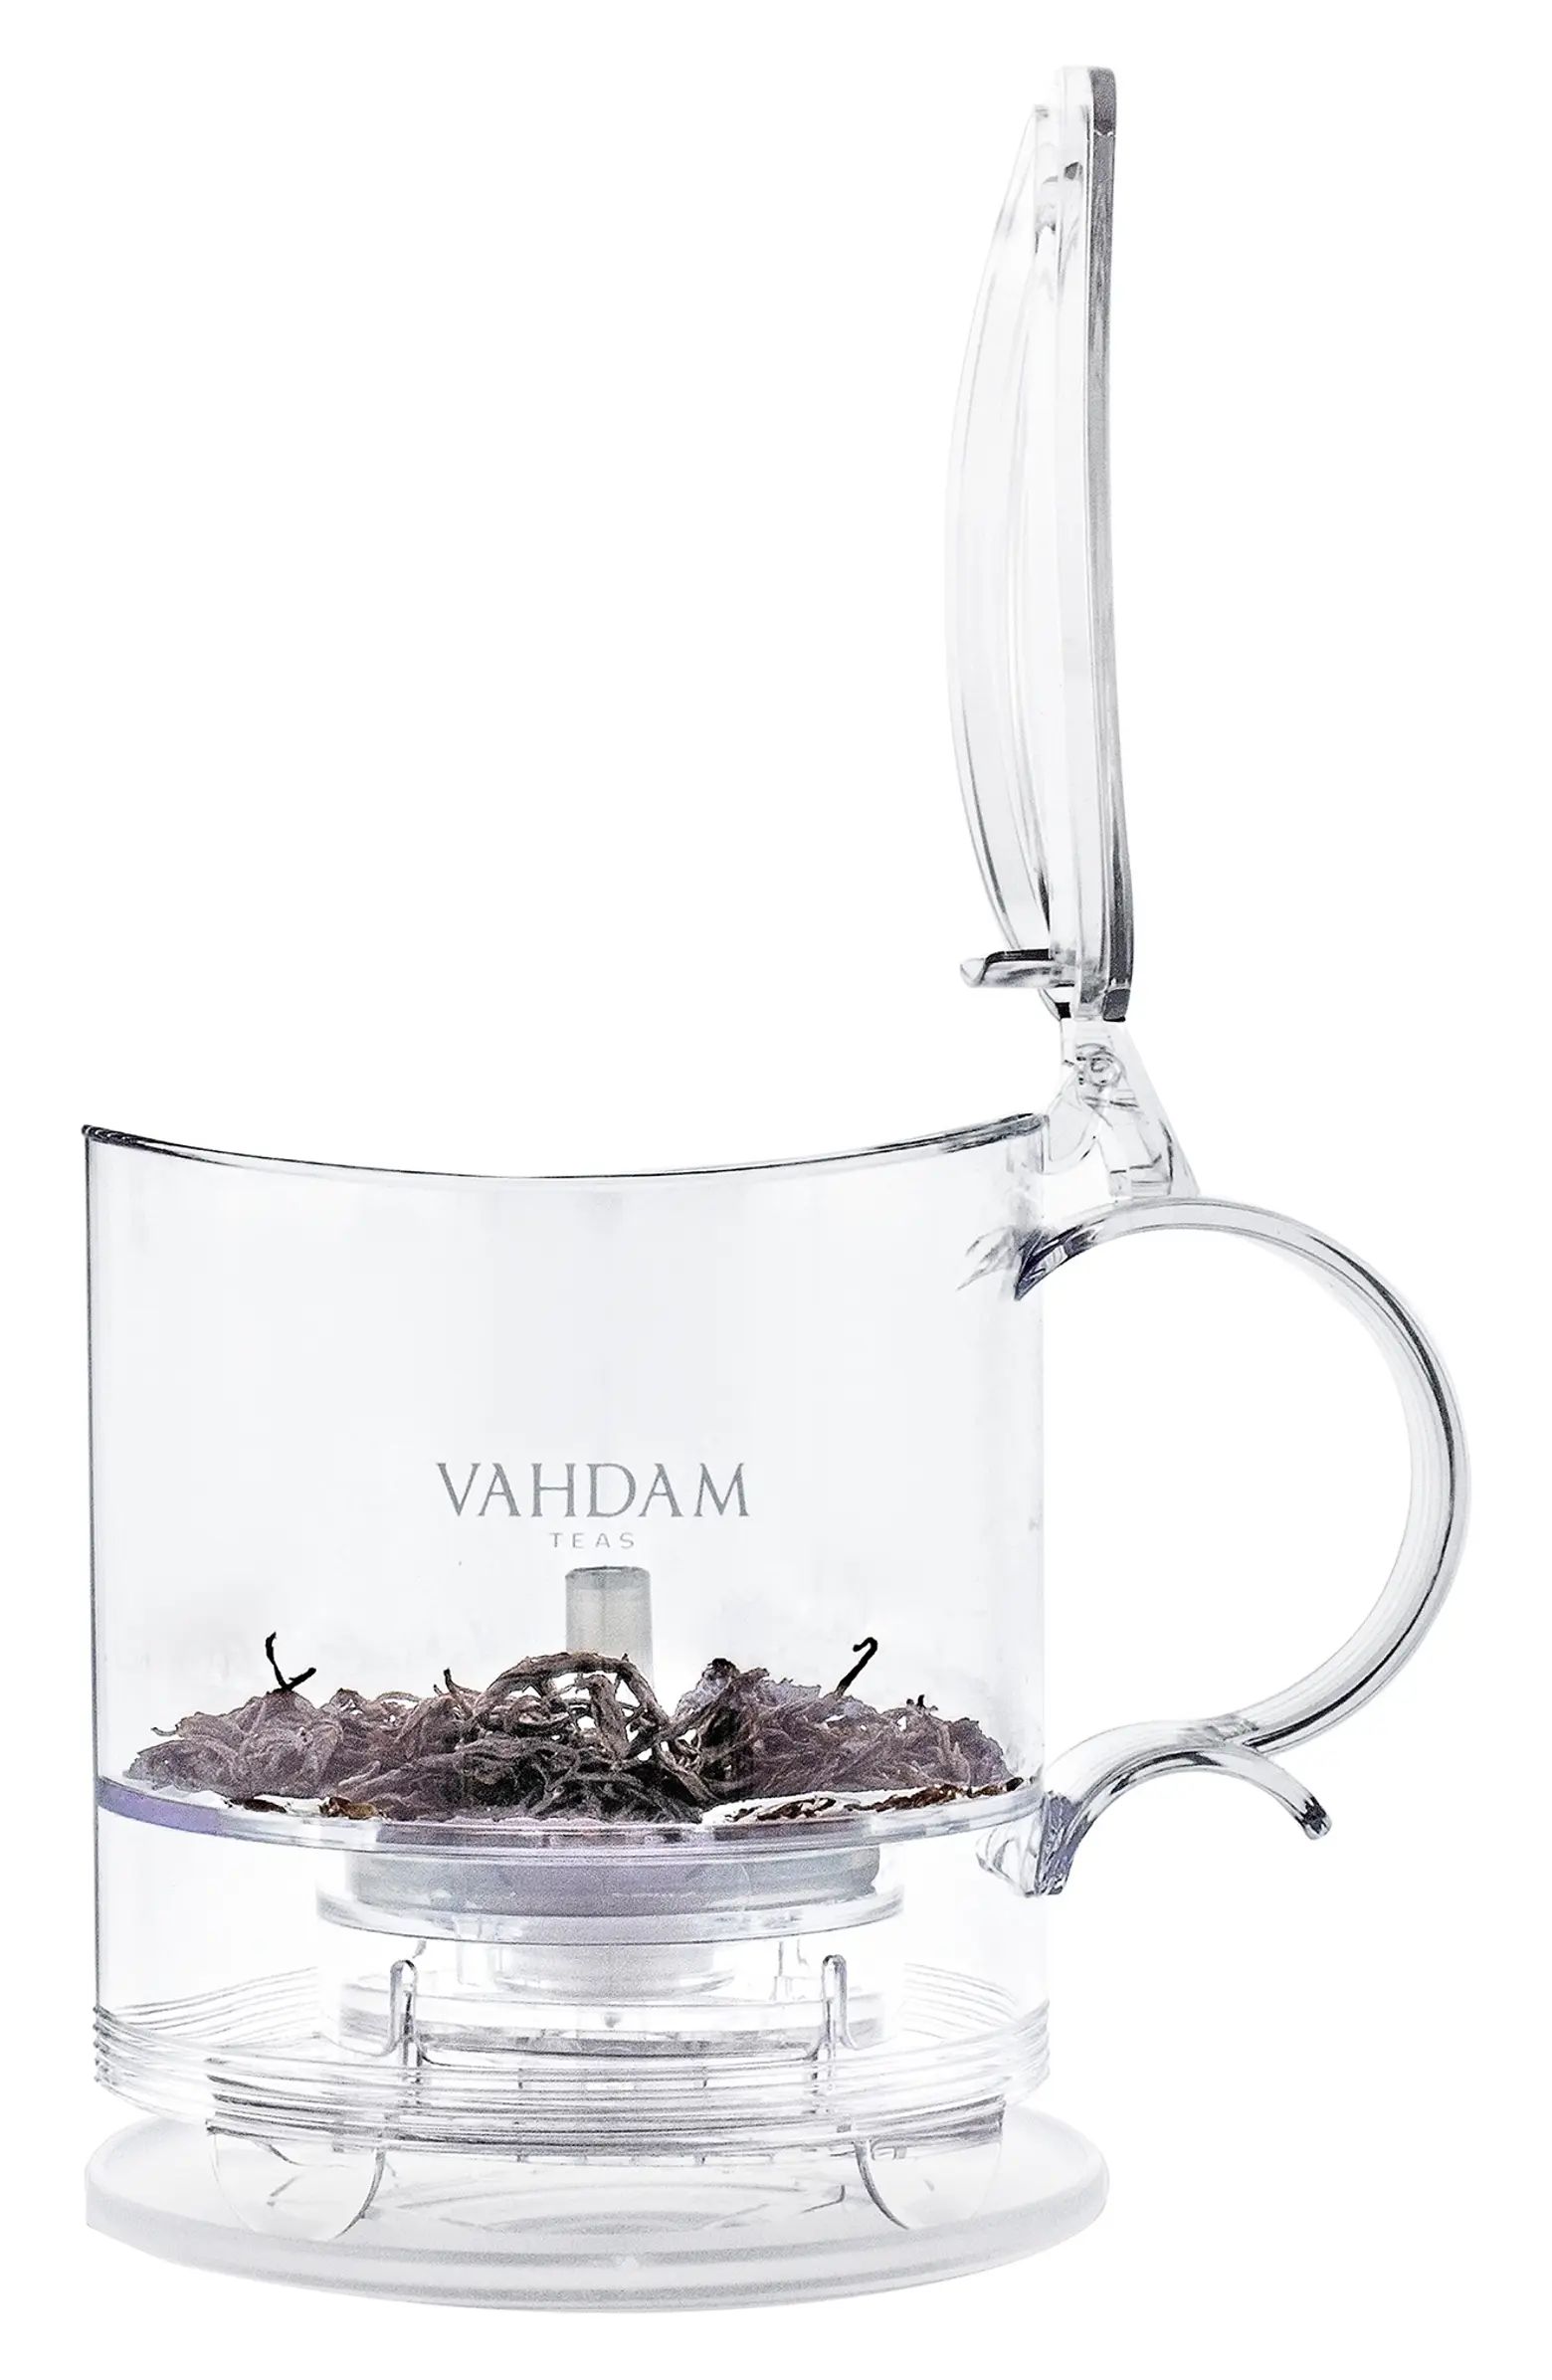 VAHDAM Teas Imperial Tea Maker | Nordstrom | Nordstrom